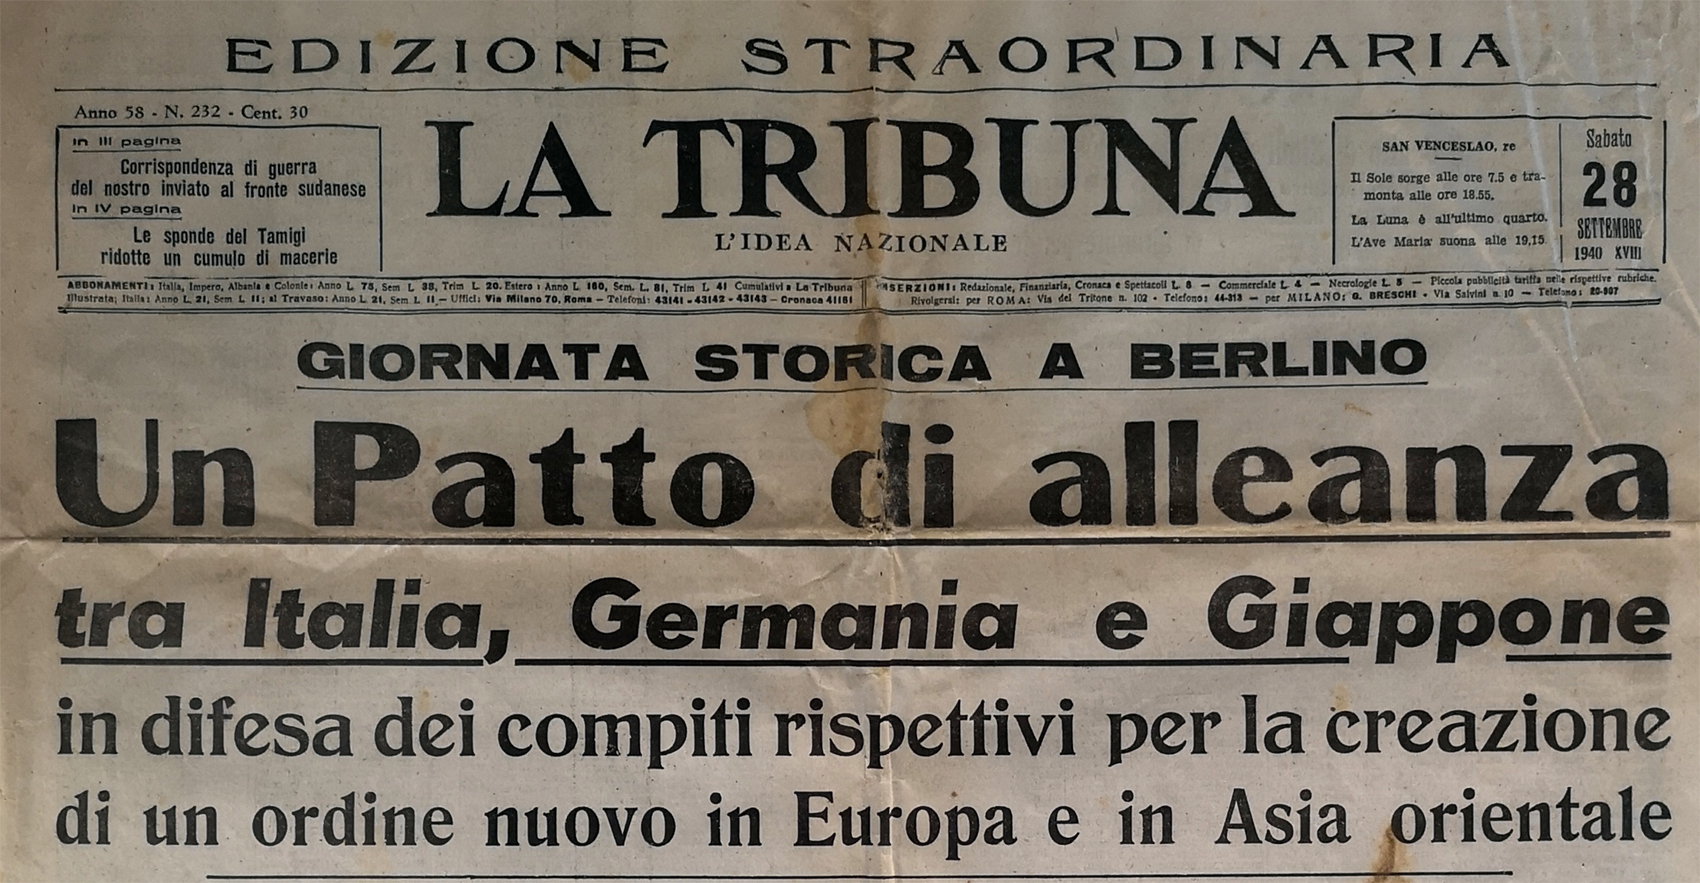 28 settembre 1940: la prima pagina del quotidiano La Tribuna sulla stipula del patto tripartito. Immagine di Gianluca T., CC-BY-SA 4.0